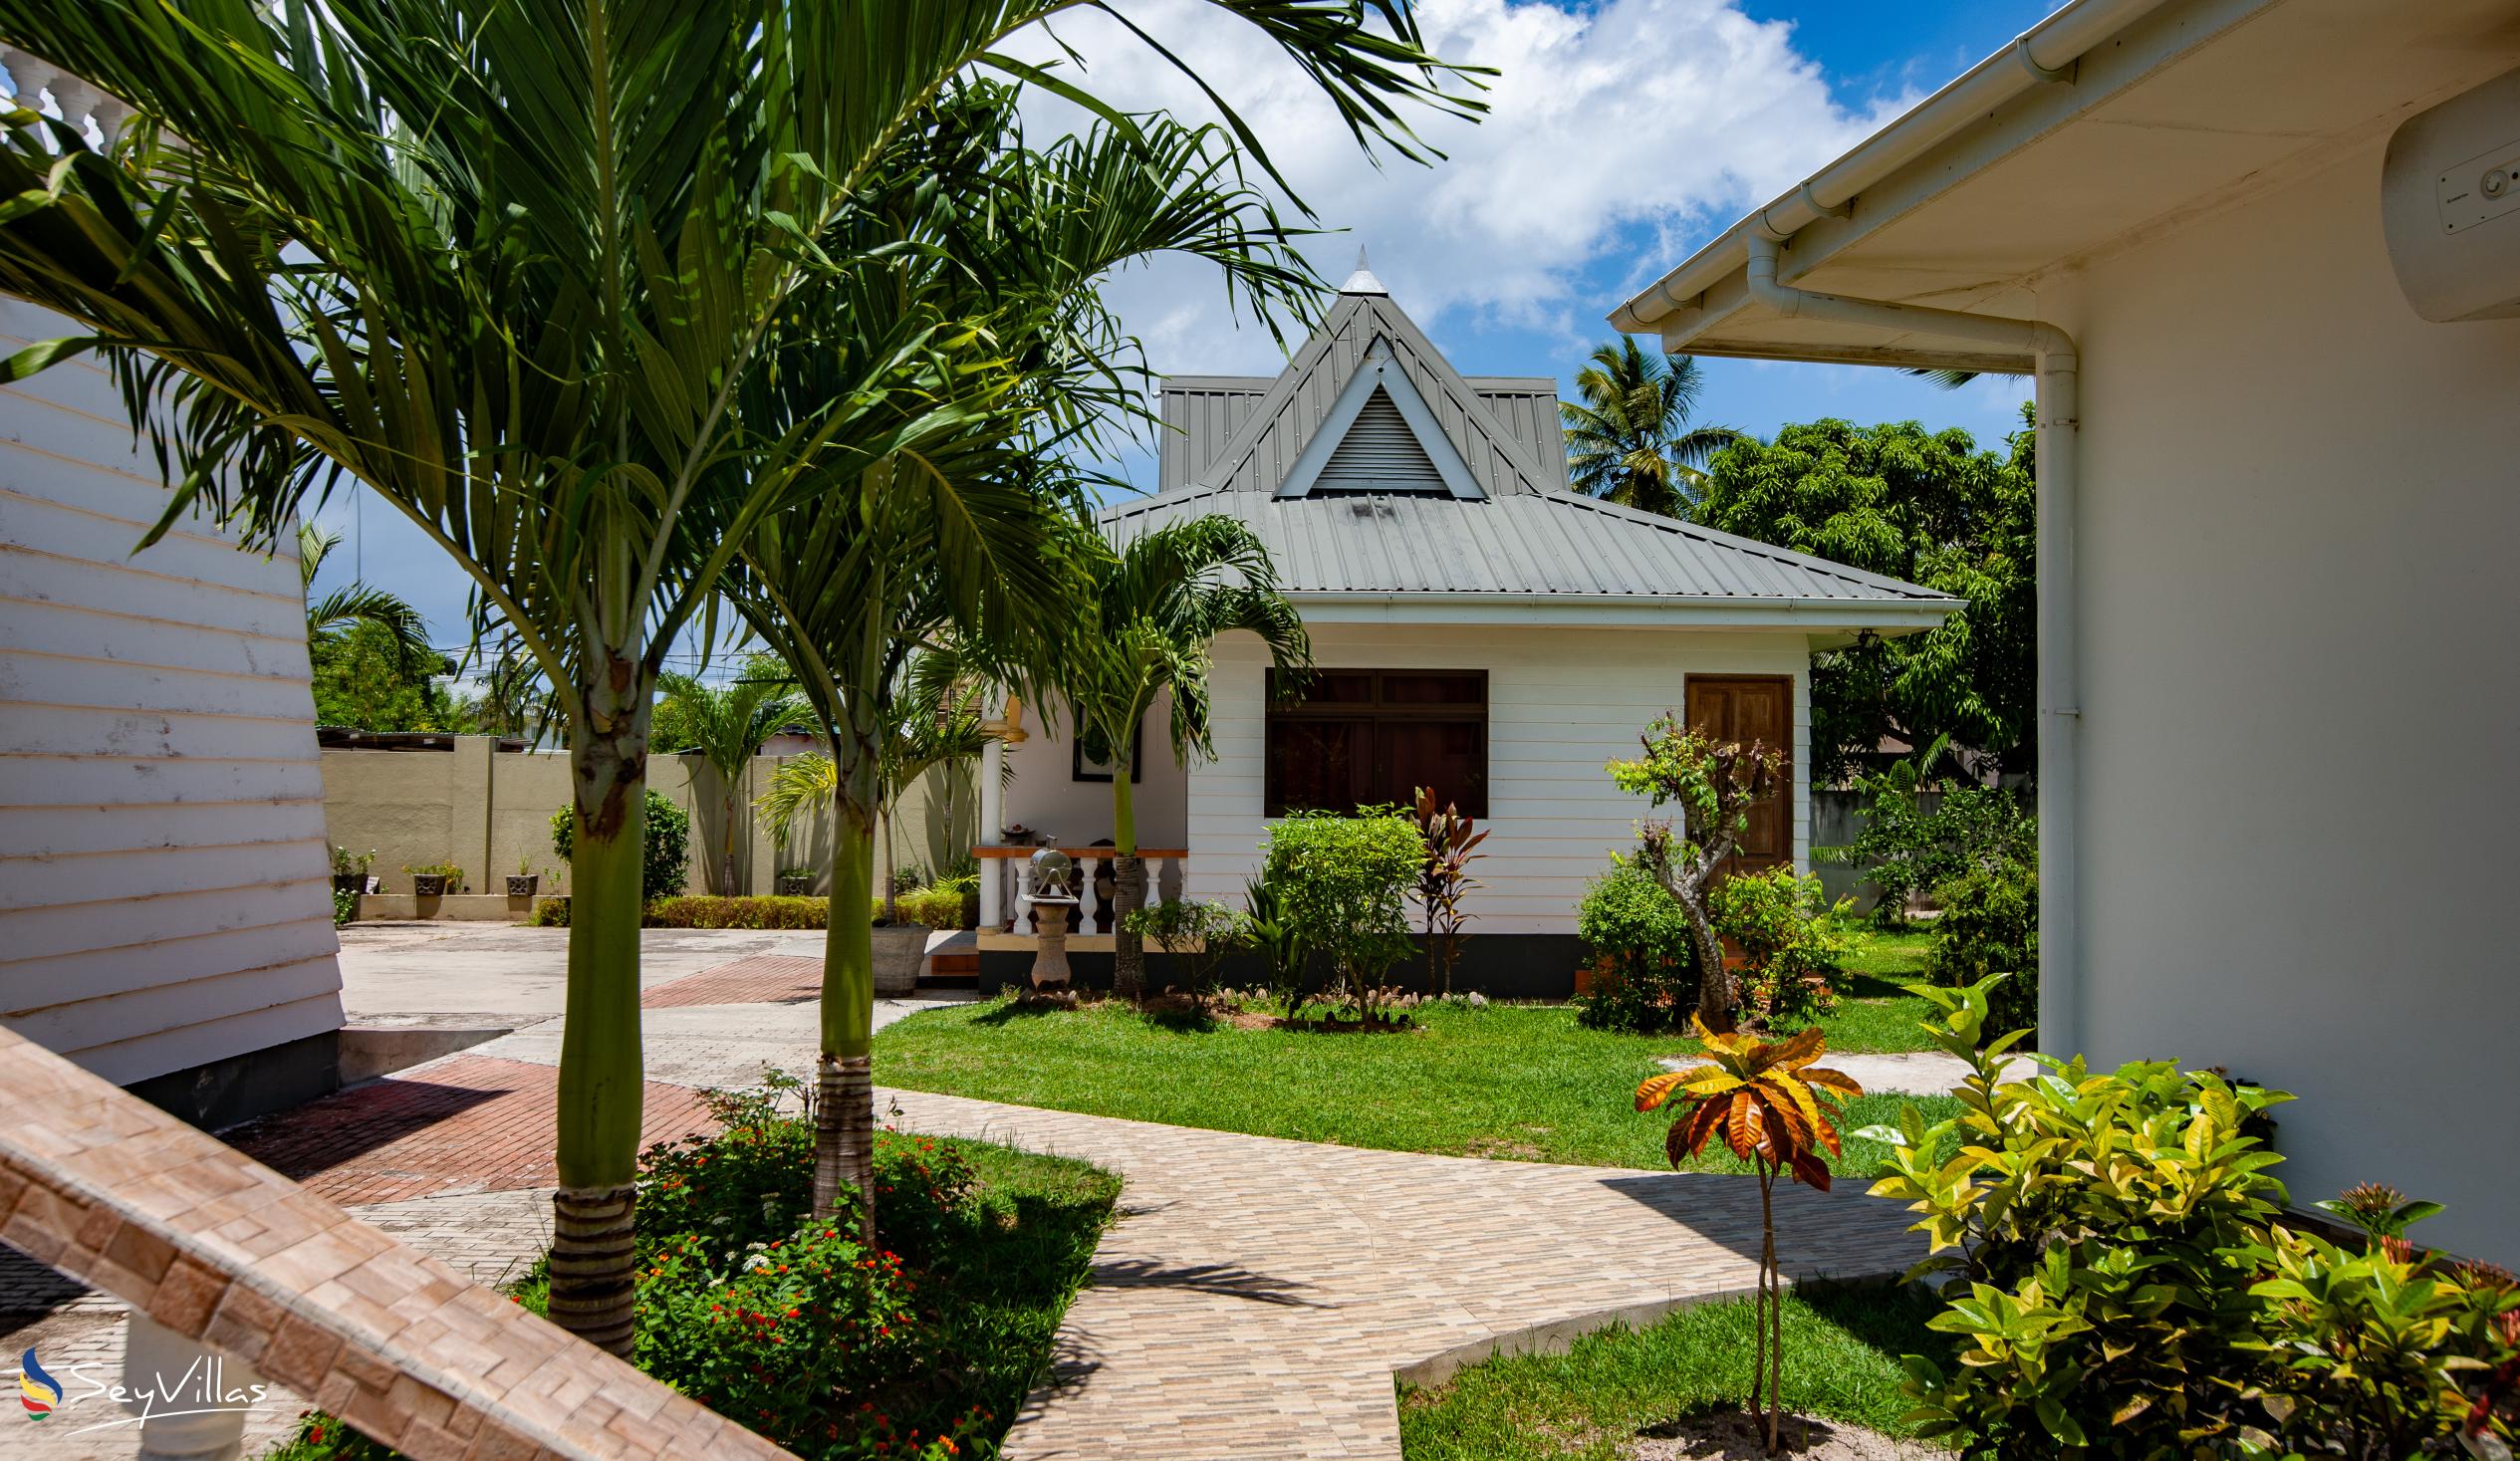 Foto 4: Villa Aya - Aussenbereich - Praslin (Seychellen)